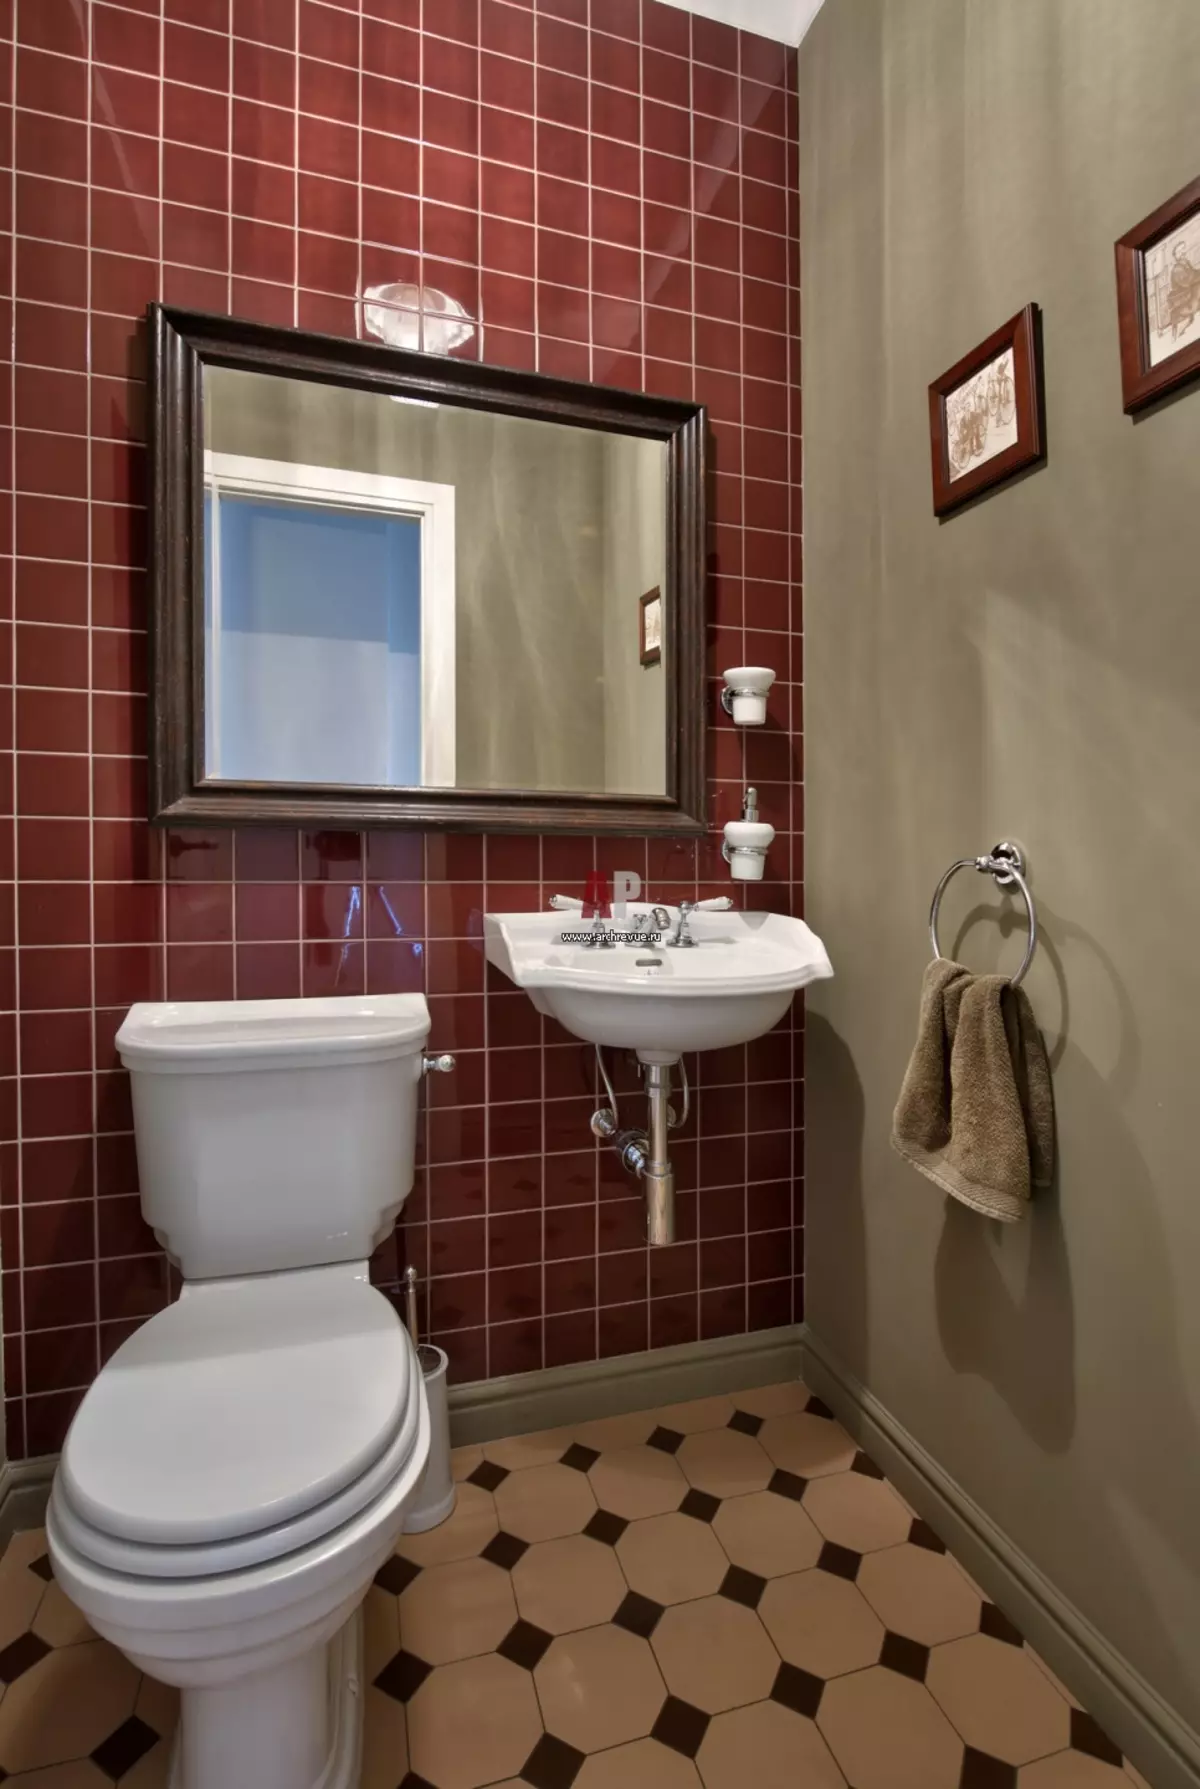 Toiletstyle (50 foto's): Toilette in Skandinawiese styl en Provence-styl, hoëtegnologie en ekosiel, in see, rustieke en ander style 10507_40